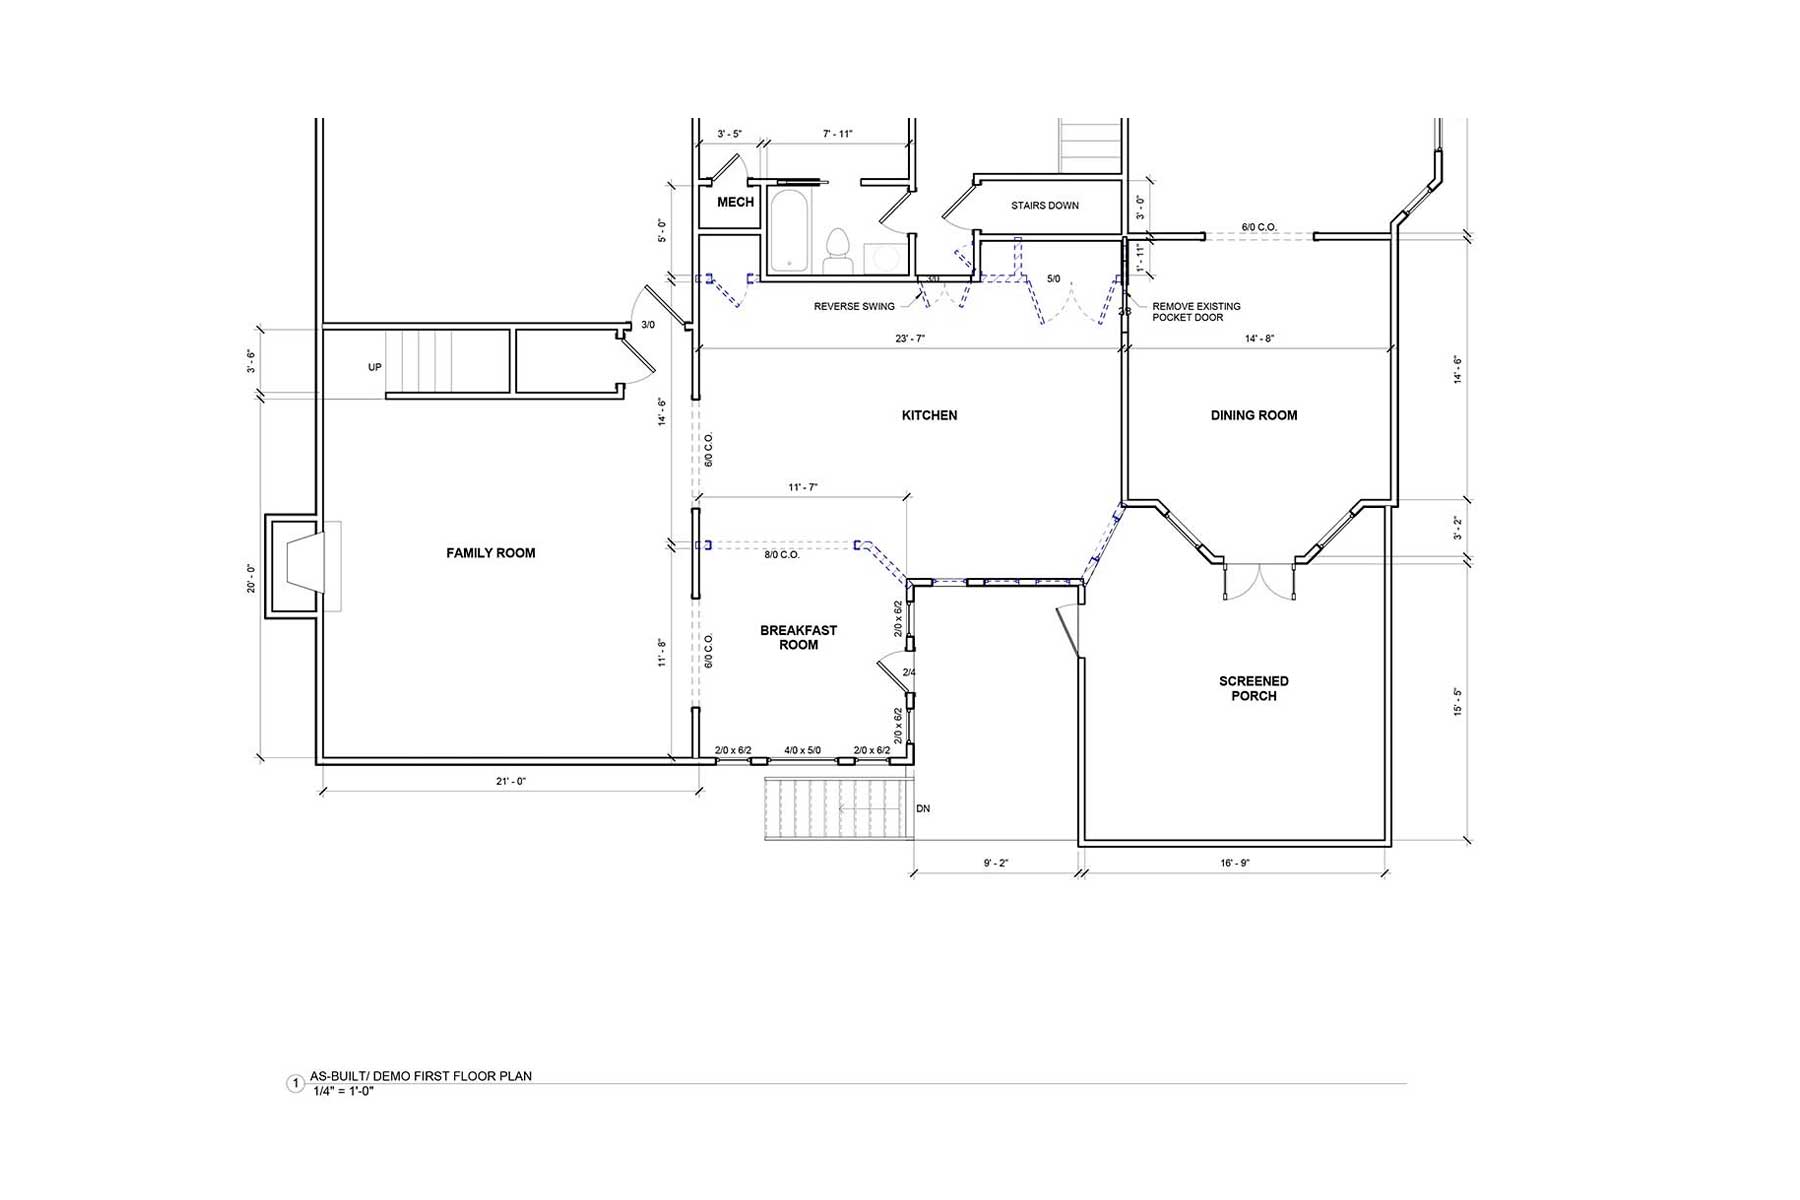 As built floor plan